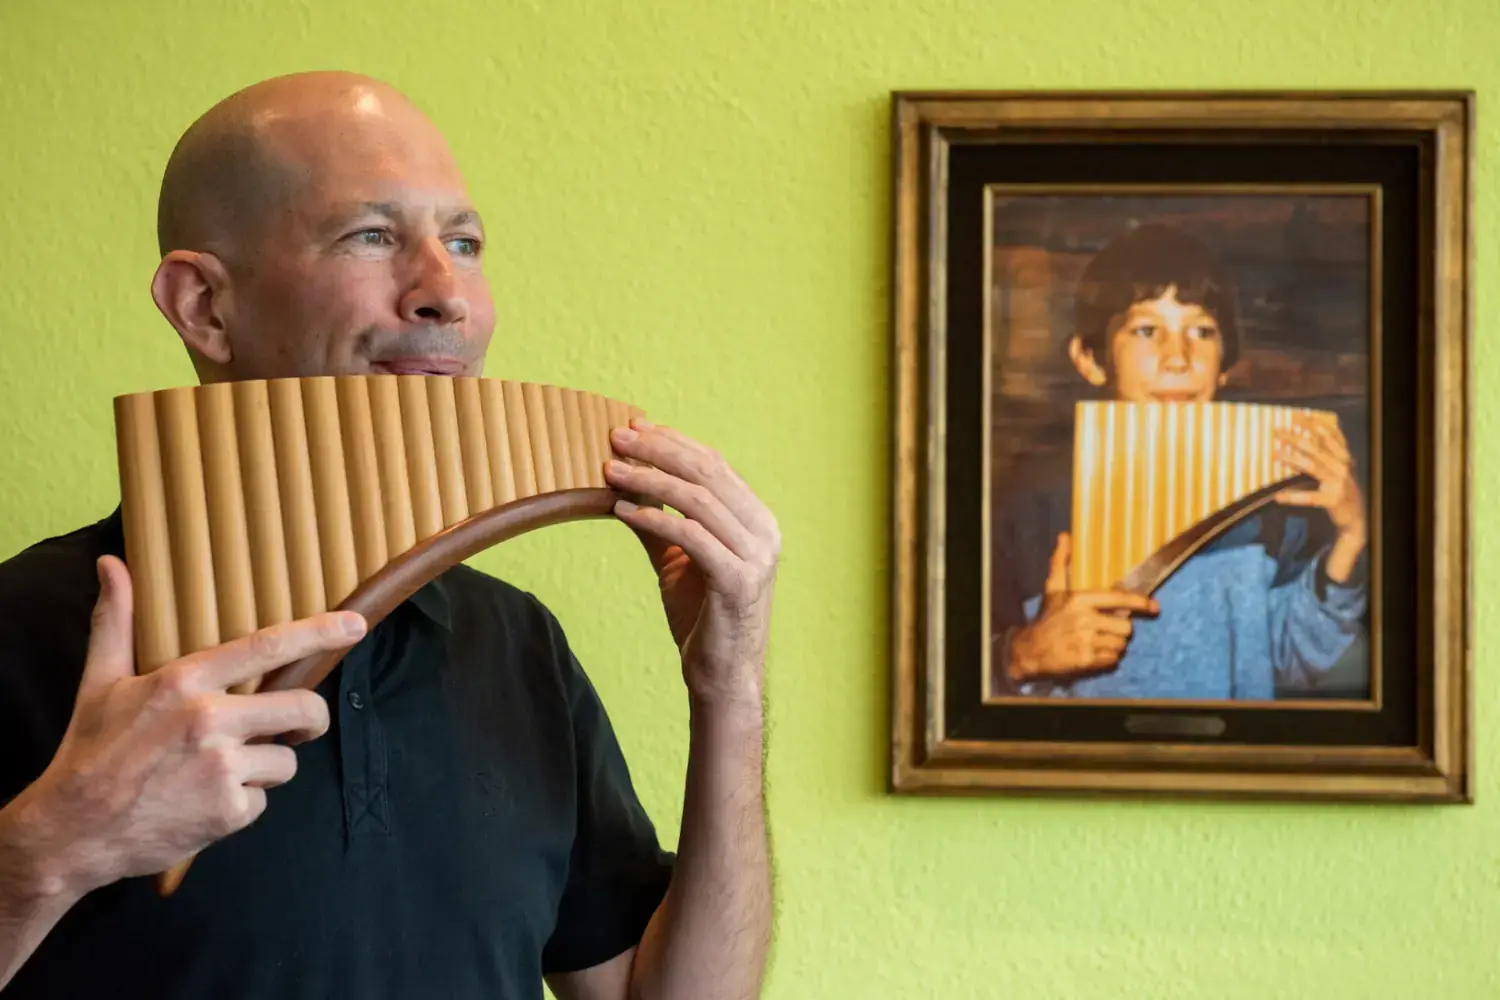 Michael Dinner spielt Panflöte; im Hintergrund ein Kinderfoto mit ihm in derselben Pose